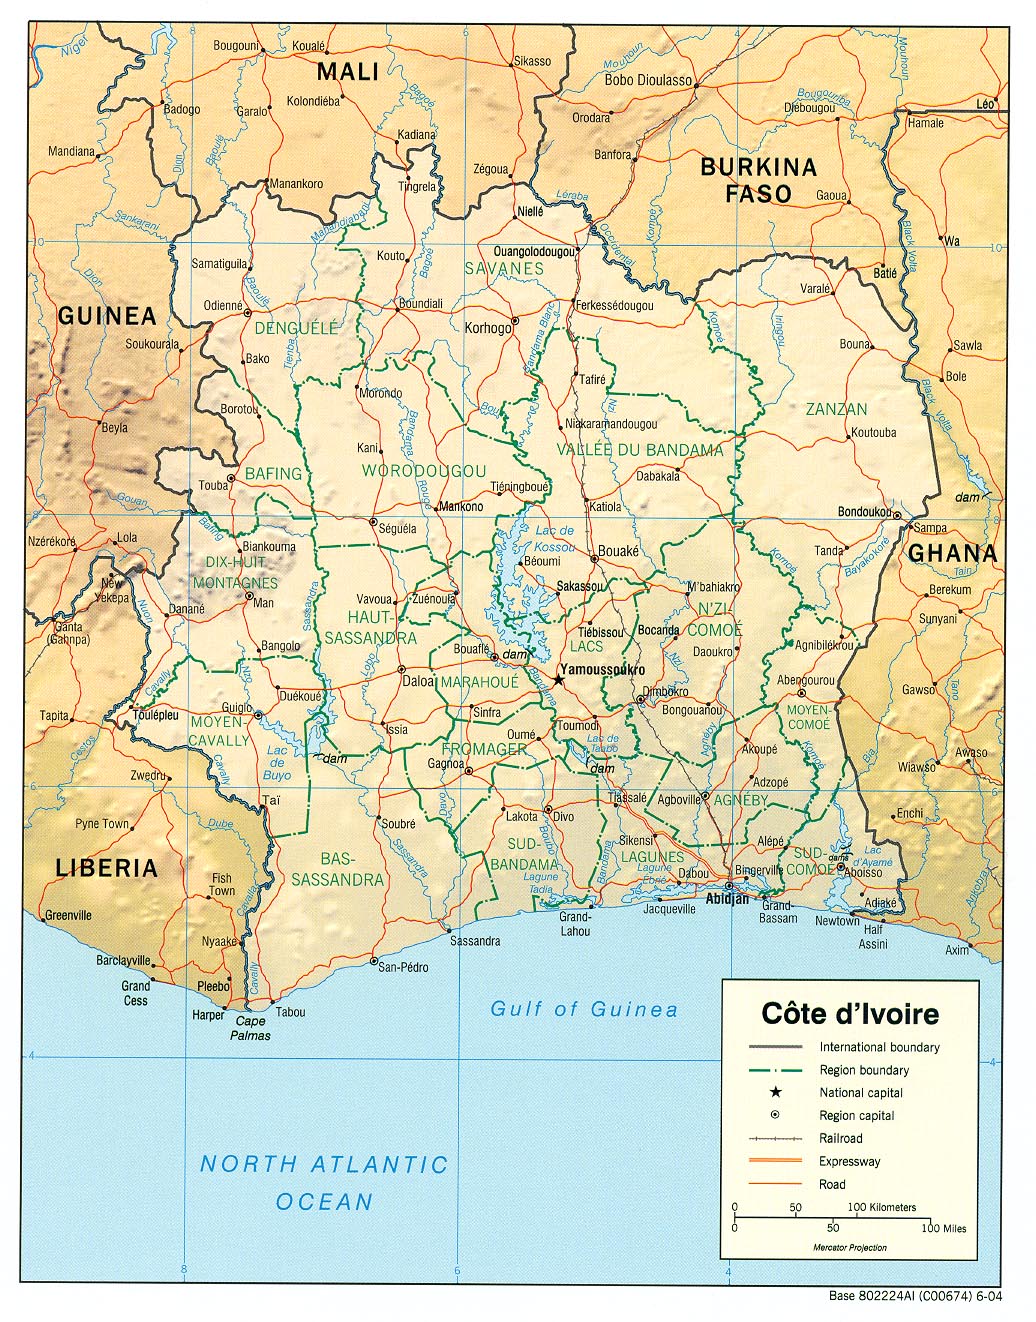 Cote d'Ivoire Map